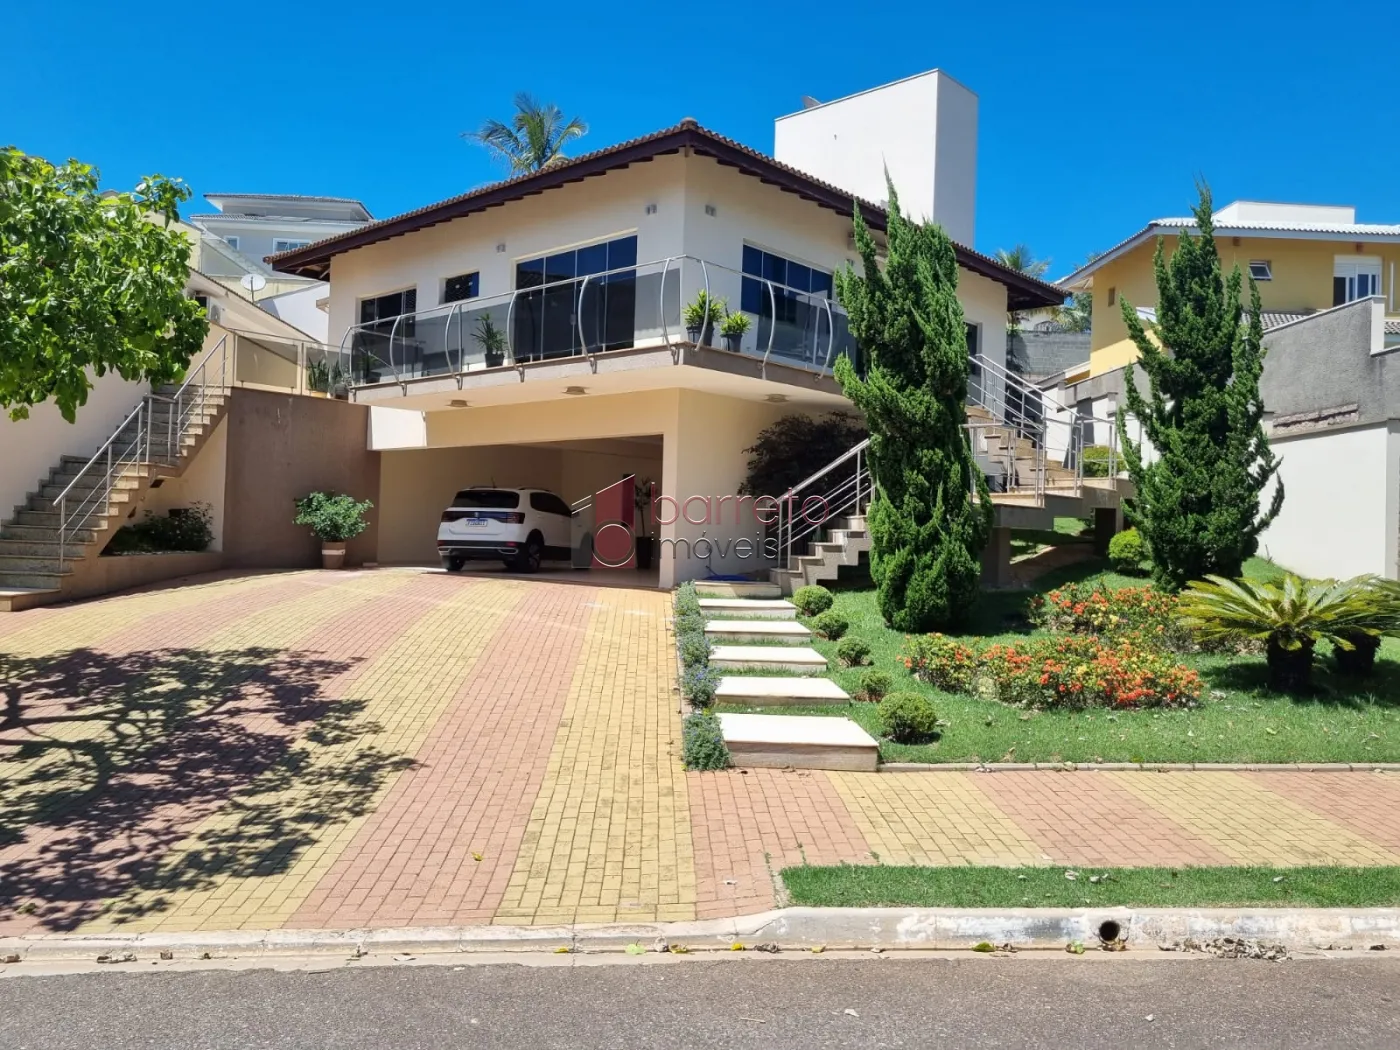 Comprar Casa / Condomínio em Jundiaí R$ 3.000.000,00 - Foto 1